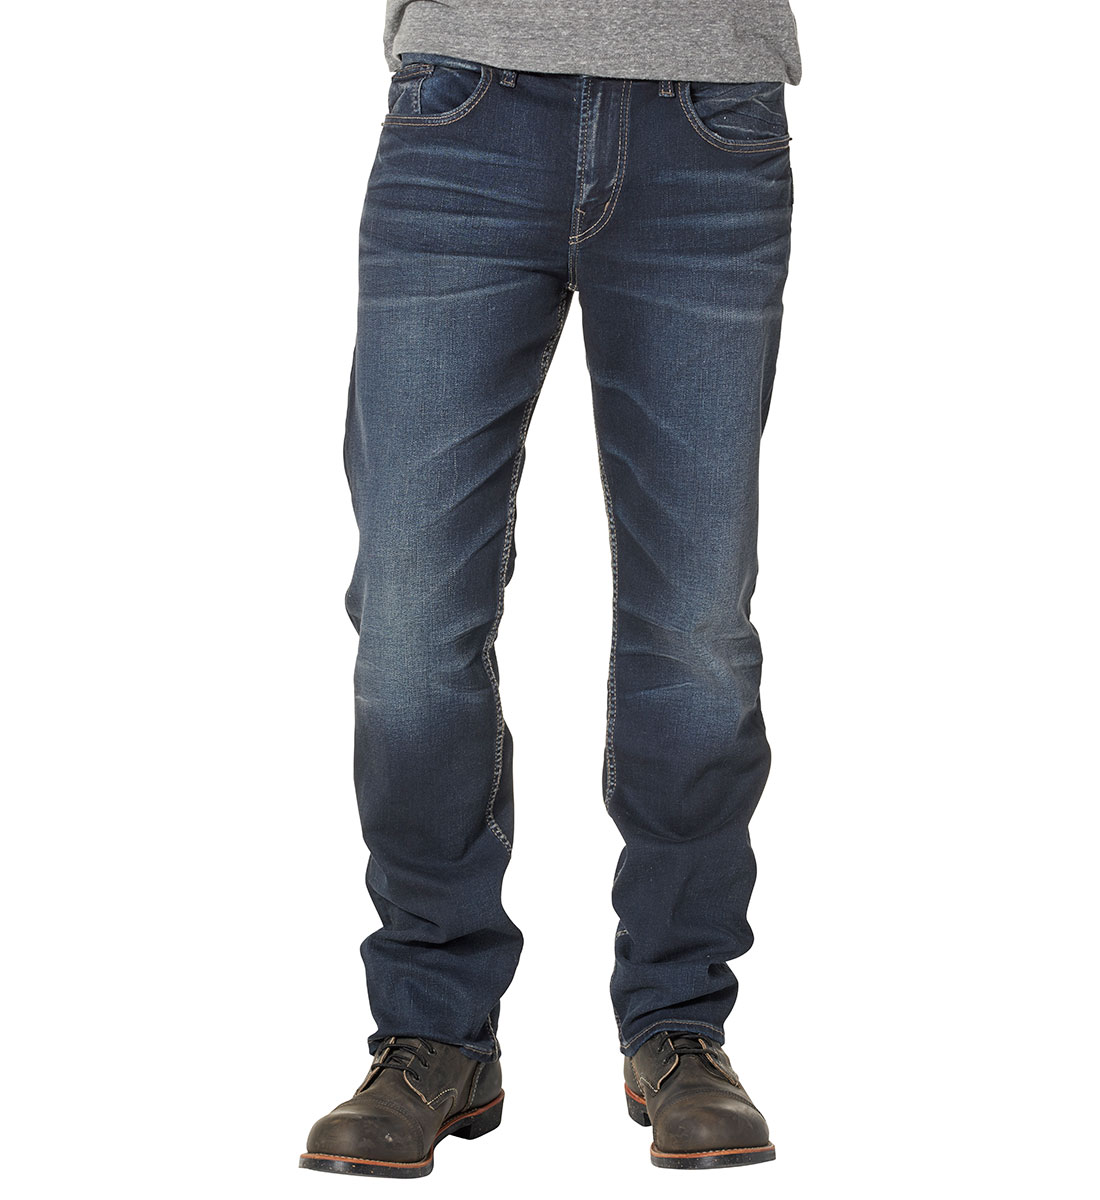 silver grayson jeans canada